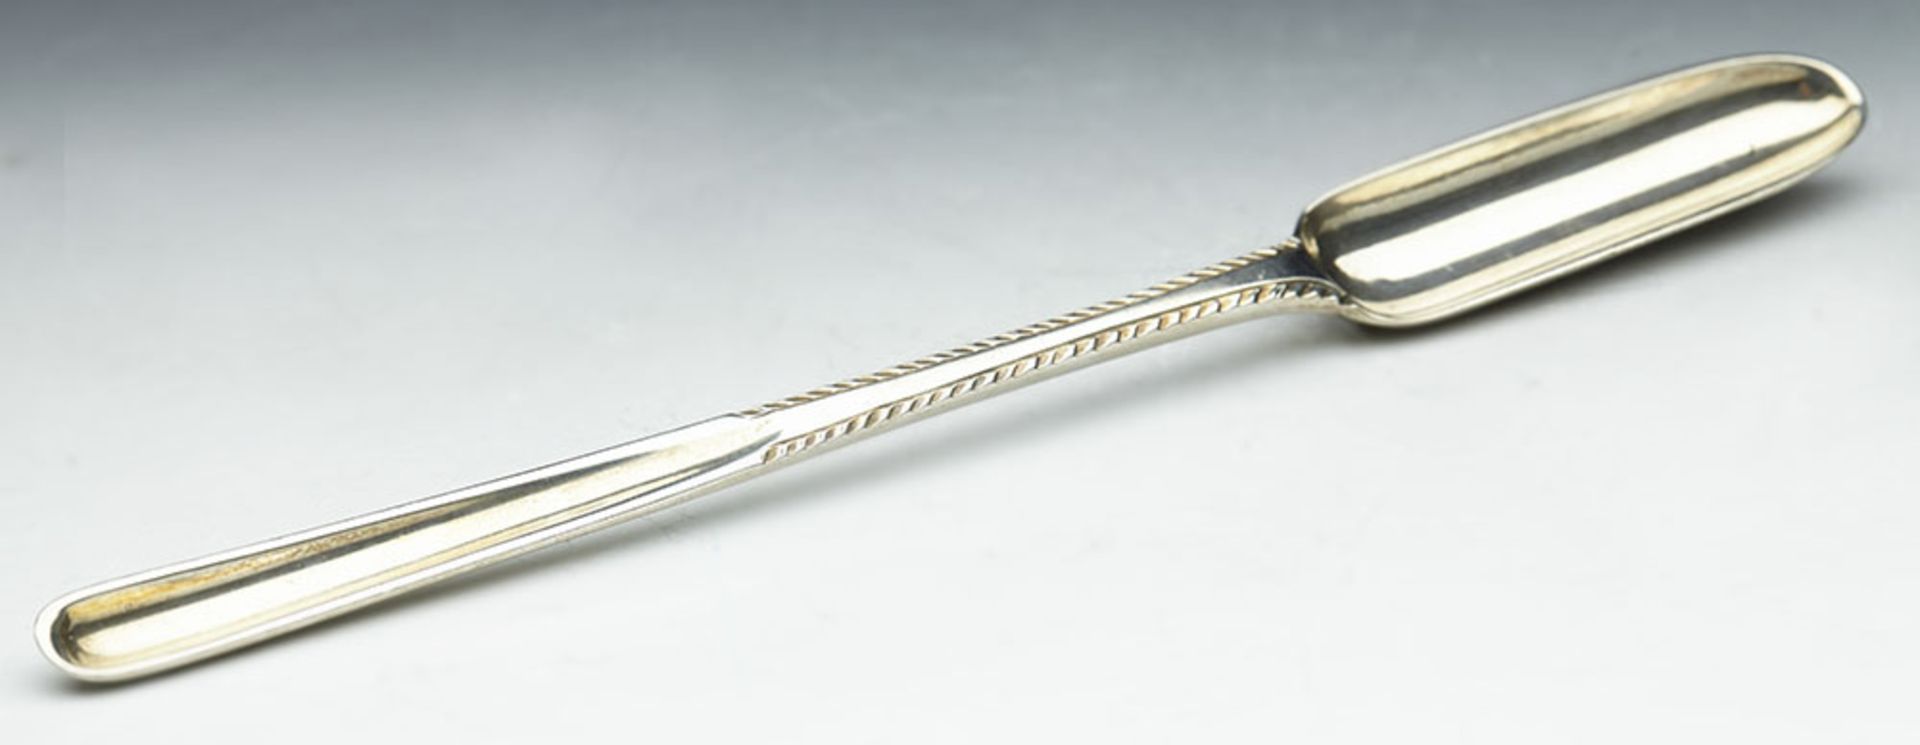 Antique Georgian Silver Marrow Scoop By T & W Chawner London 1759